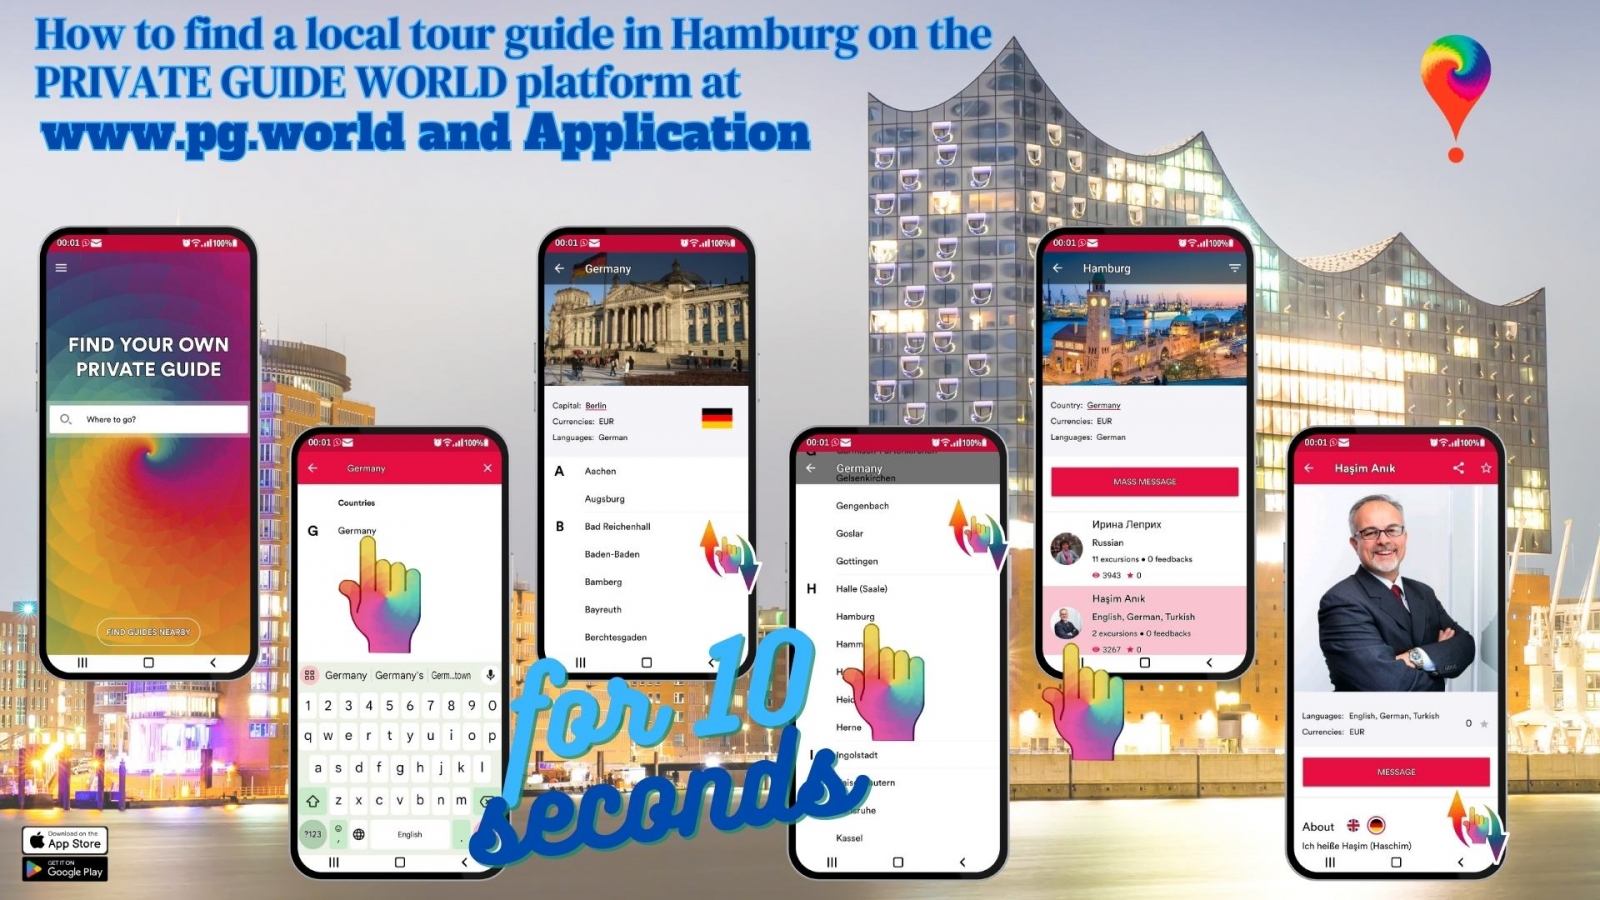 So finden Sie einen lokalen Reiseführer in Hamburg auf der Plattform PRIVATE GUIDE WORLD